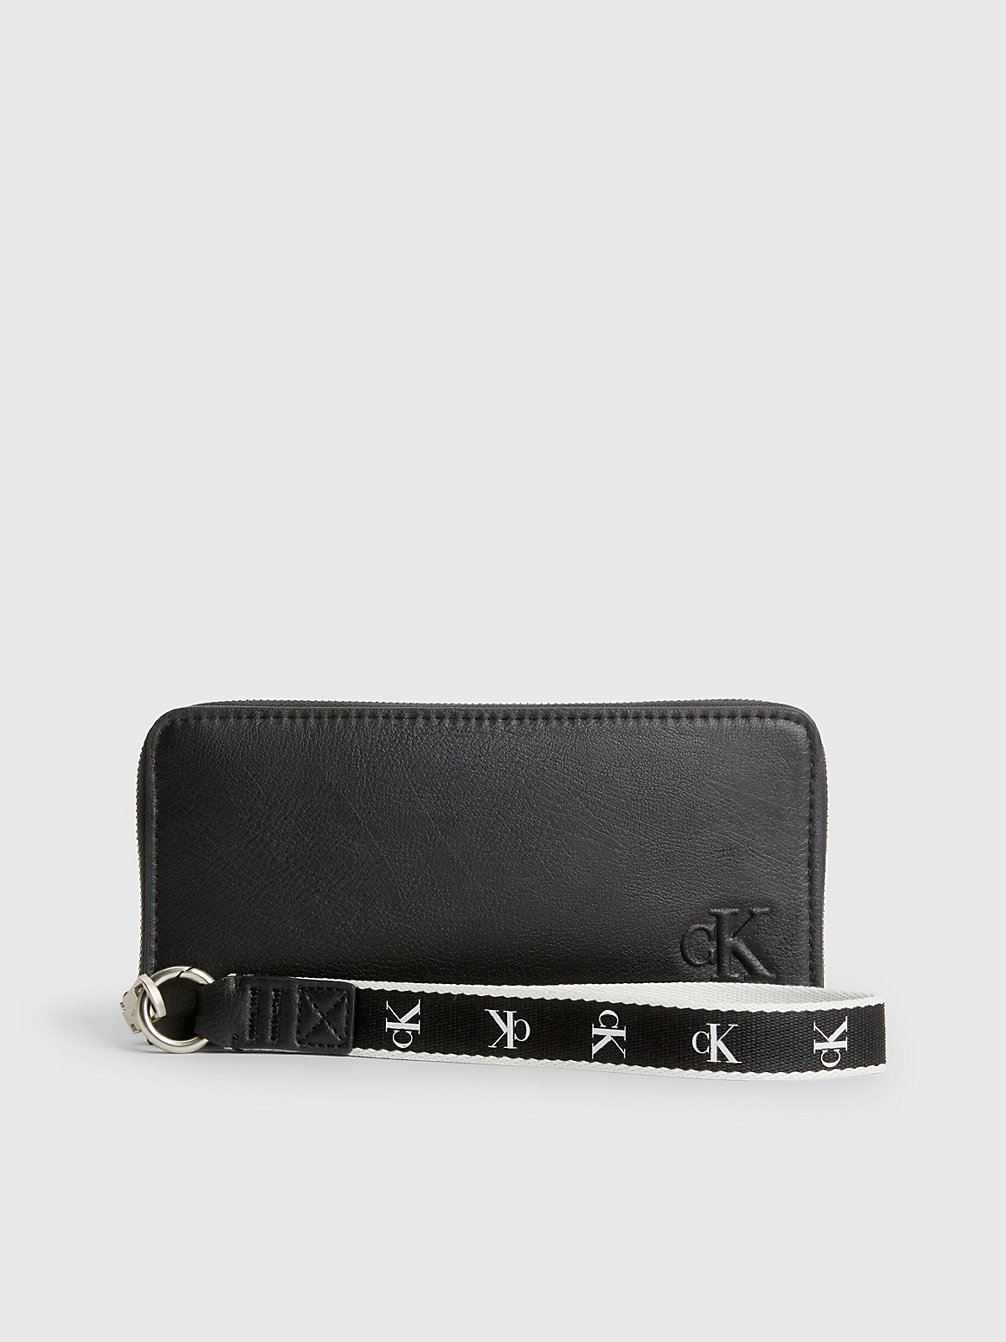 BLACK > Armbandtaschen-Portemonnaie Mit Rundum-Reißverschluss Aus Recyceltem Material > undefined Damen - Calvin Klein